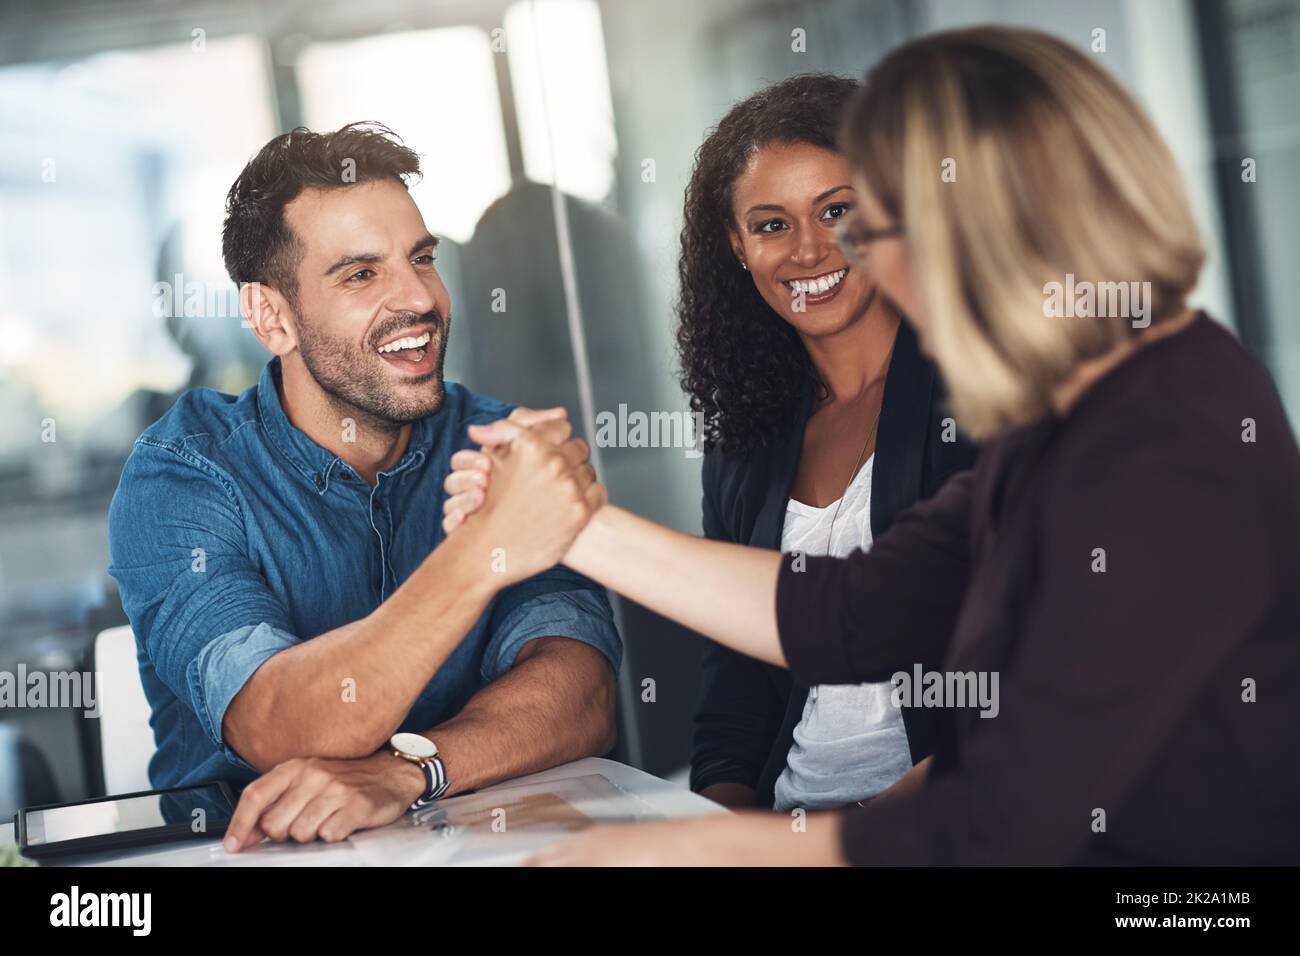 Des partenaires solides entretiennent des relations commerciales solides. Photo d'une femme d'affaires et d'un homme d'affaires se serrant la main lors d'une réunion dans un bureau moderne. Banque D'Images